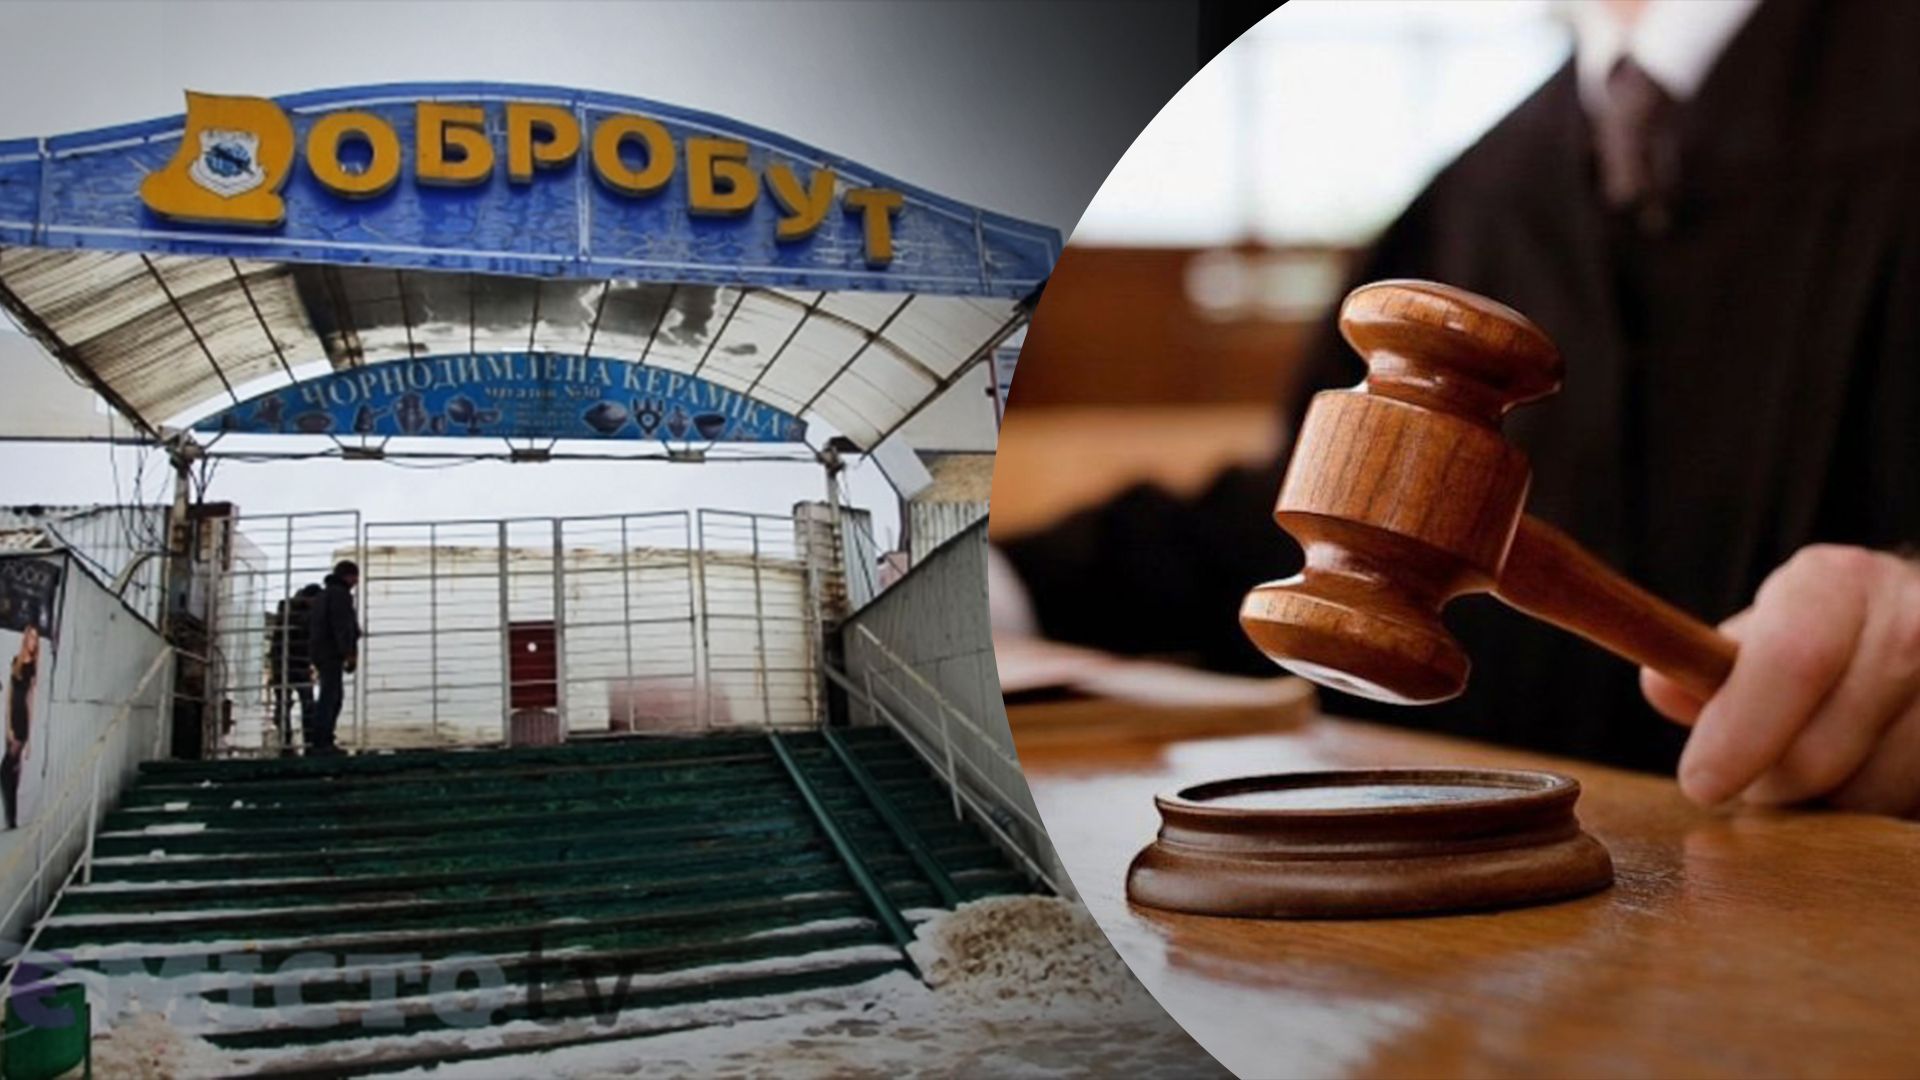 "Системная афера": во Львове перенесли судебное заседание по делу рынка "Добробут" - 24 Канал